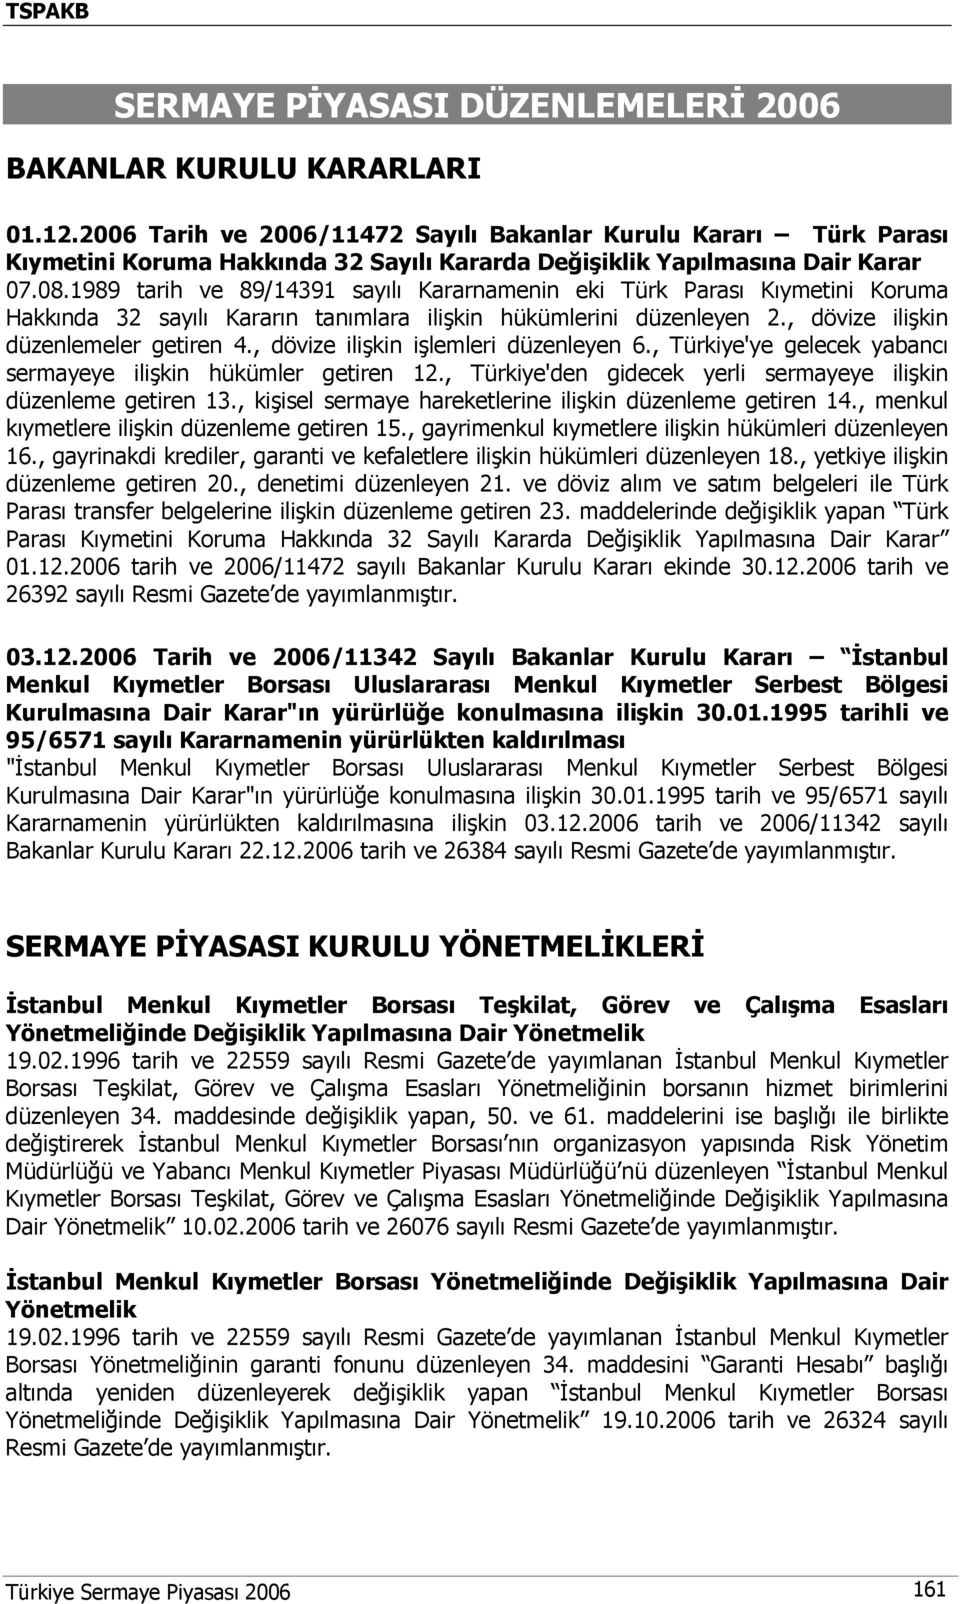 1989 tarih ve 89/14391 sayılı Kararnamenin eki Türk Parası Kıymetini Koruma Hakkında 32 sayılı Kararın tanımlara ilişkin hükümlerini düzenleyen 2., dövize ilişkin düzenlemeler getiren 4.